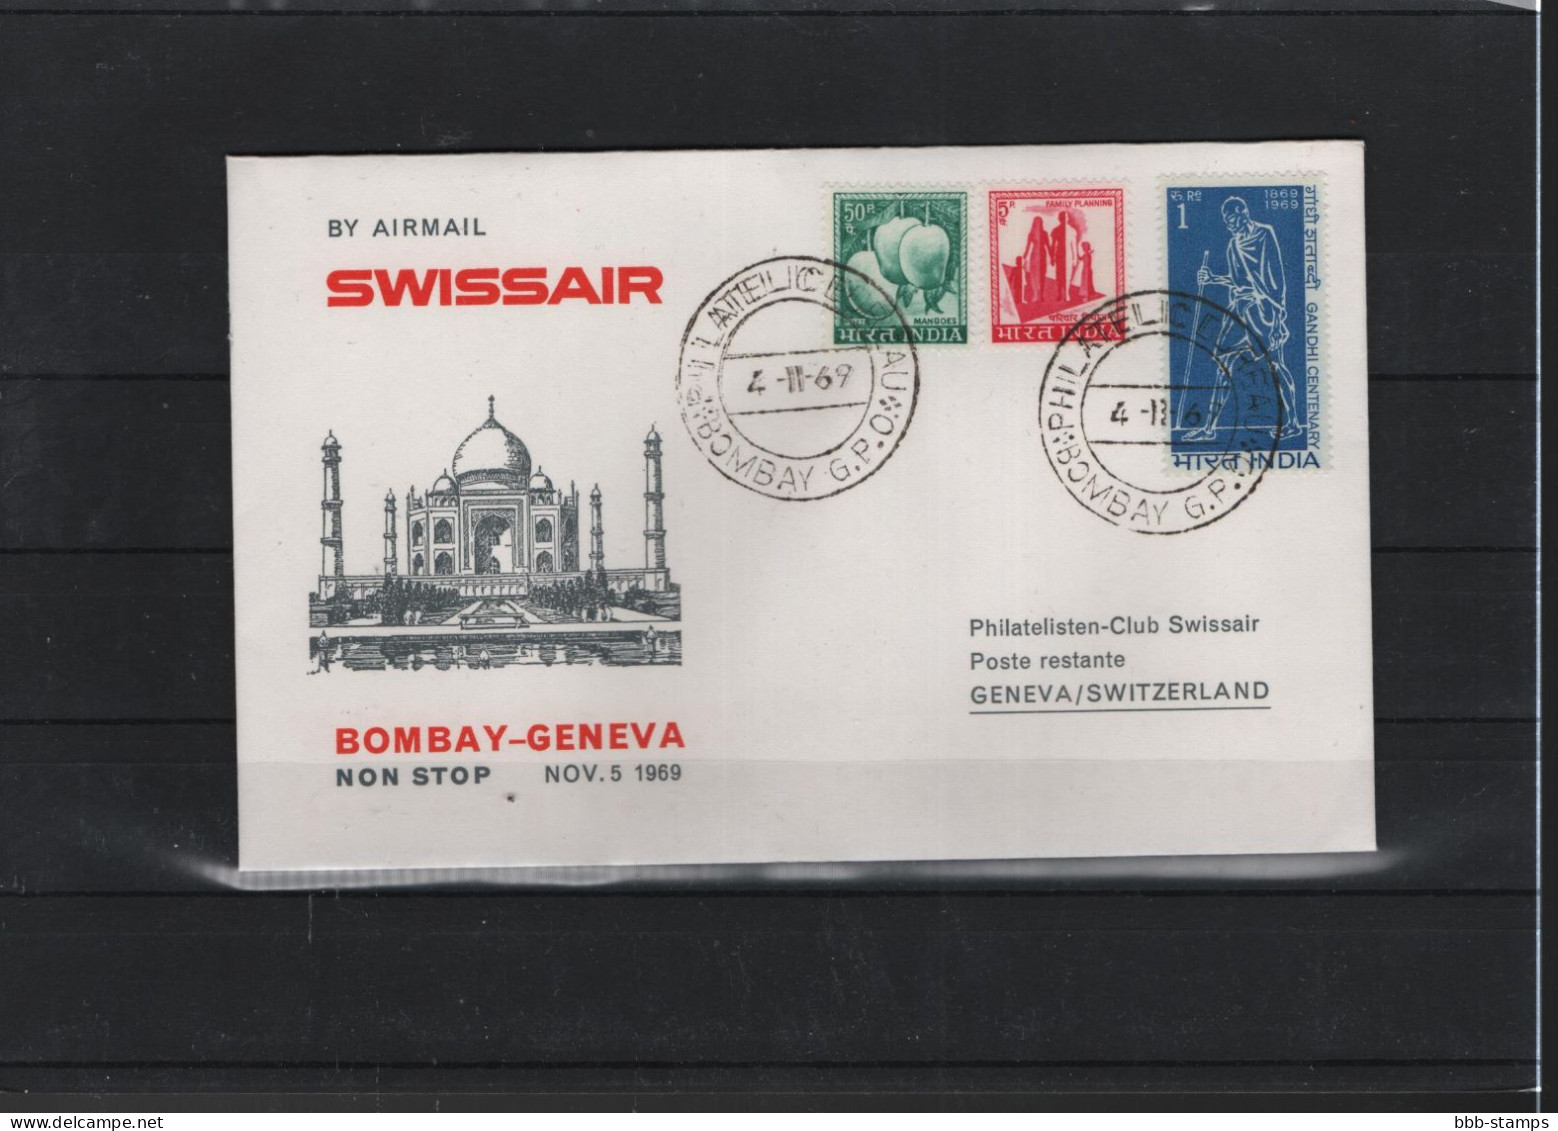 Schweiz Air Mail Swissair  FFC  2.11.1969 Genf - Bombay VV - Erst- U. Sonderflugbriefe